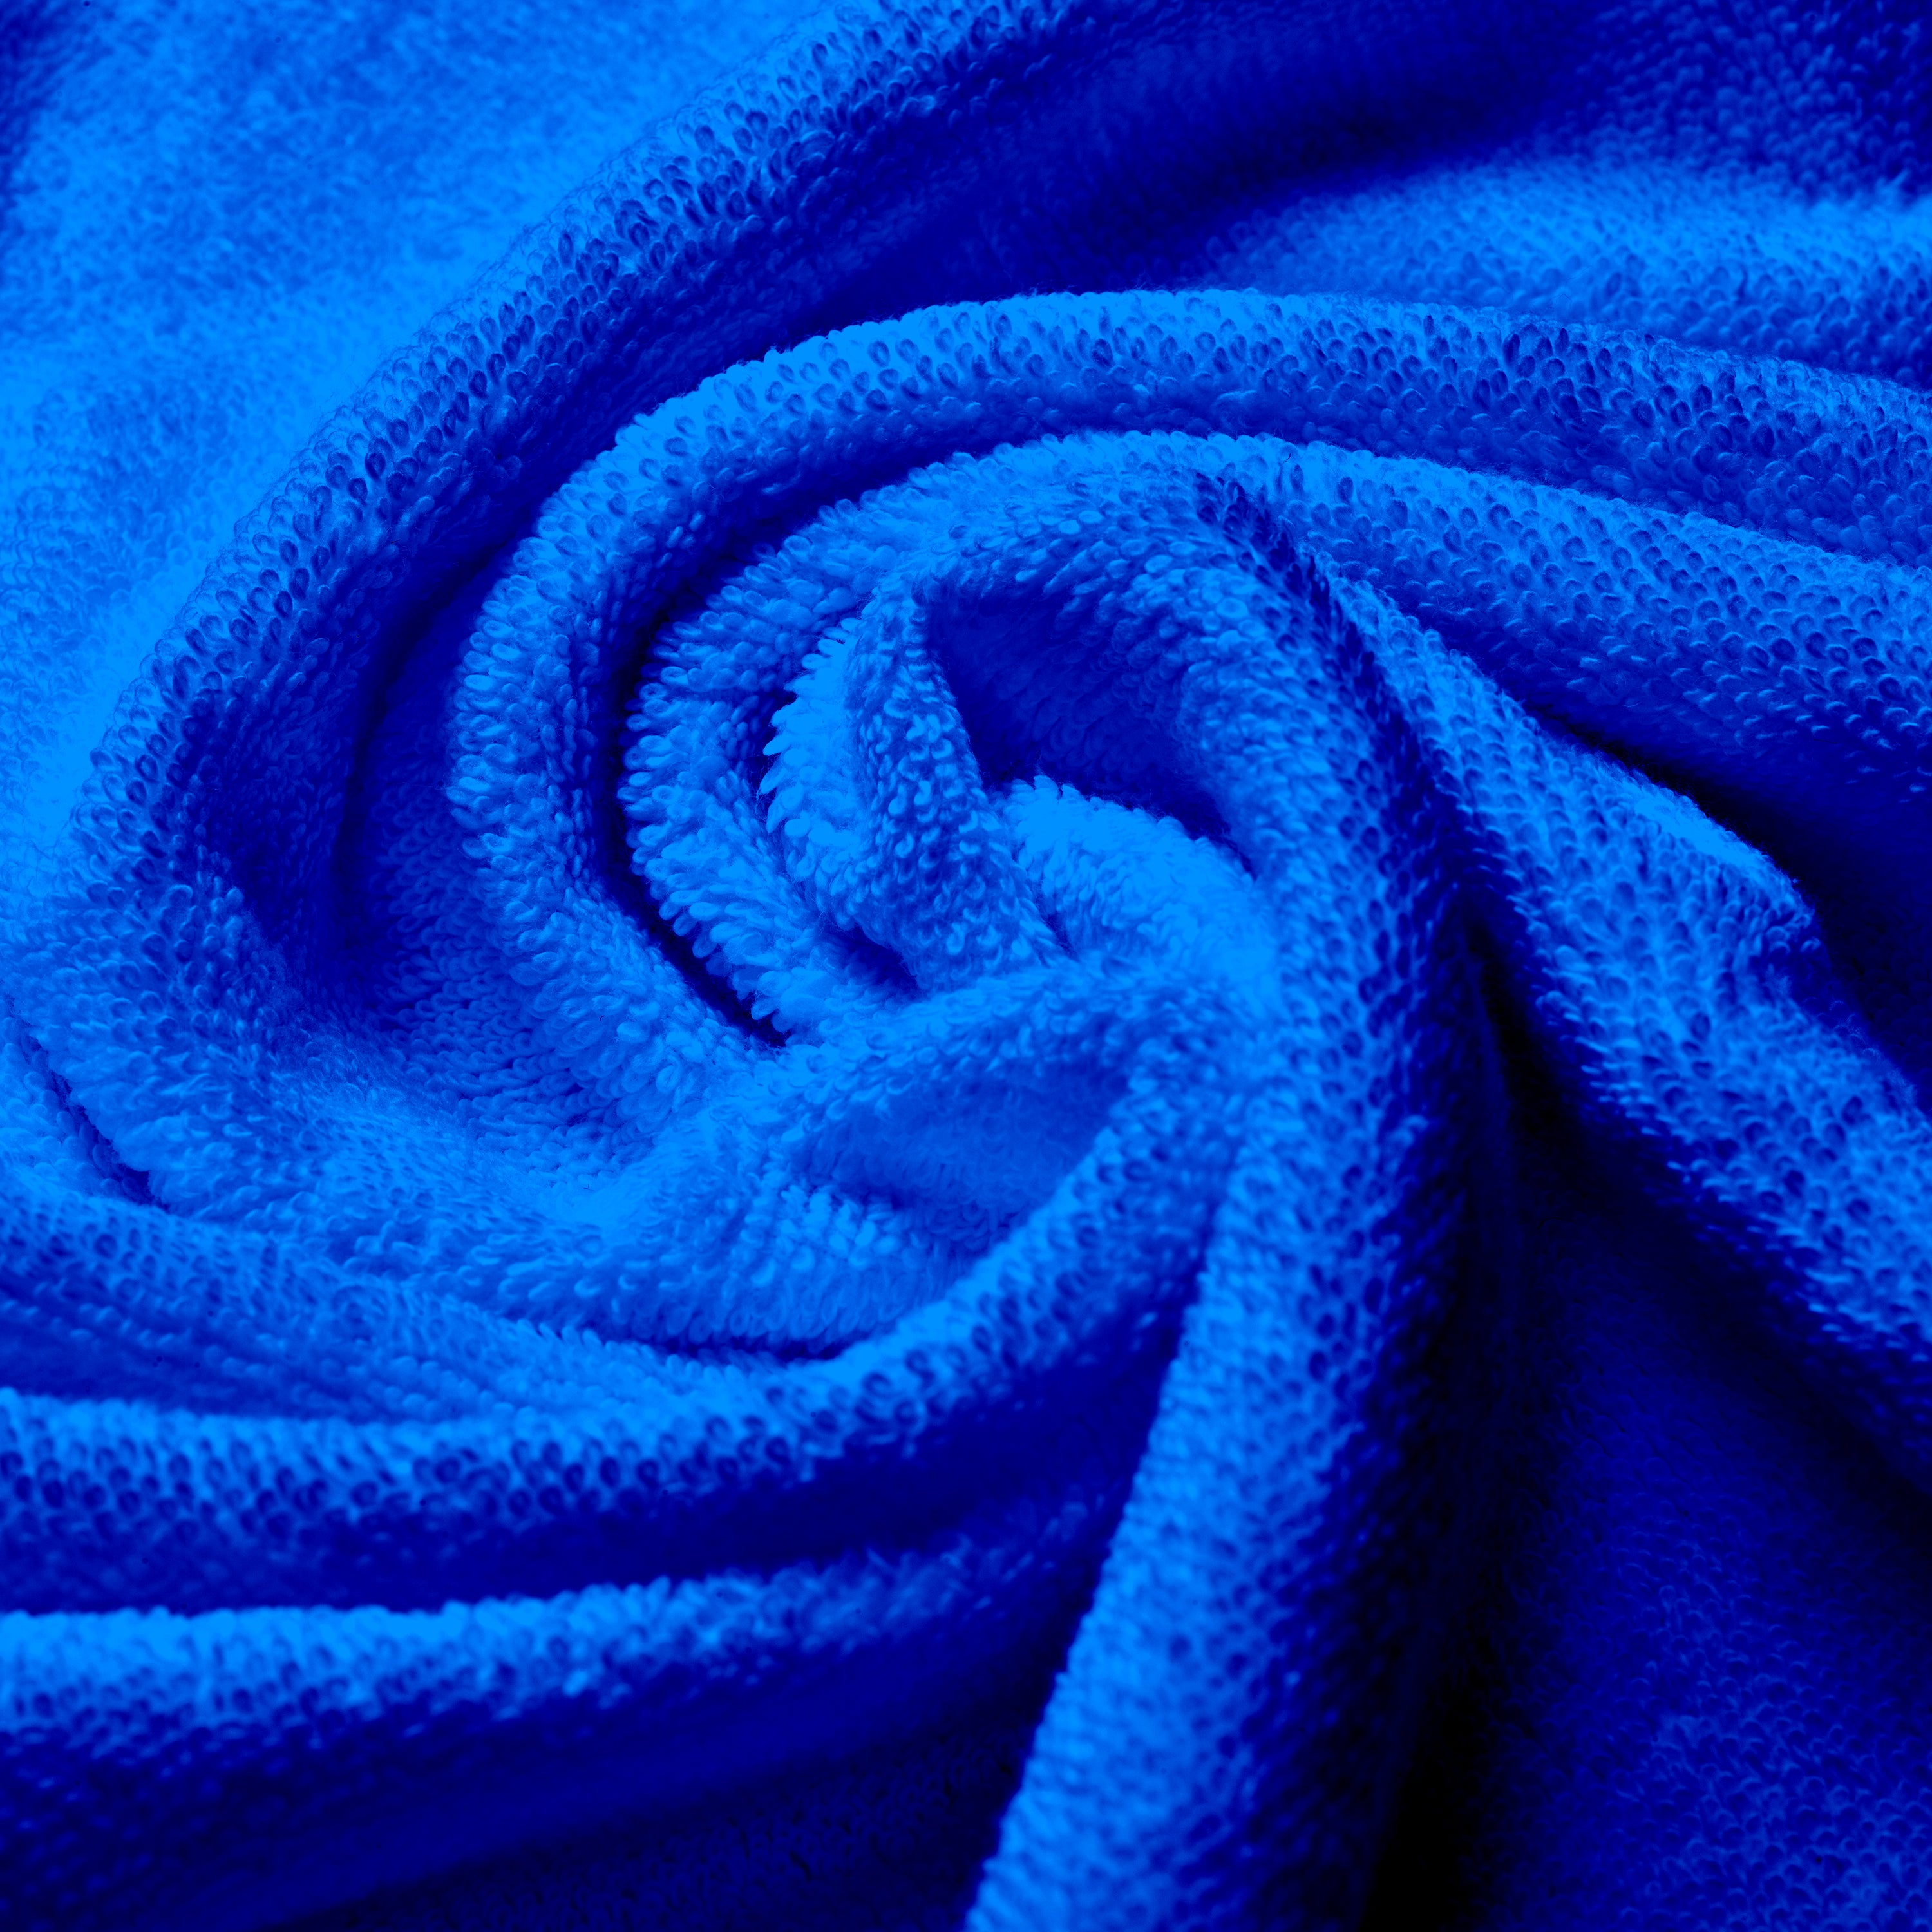 Aquacado 38 x 58 cm Hand Towel Set Of 4 White & Irish Blue